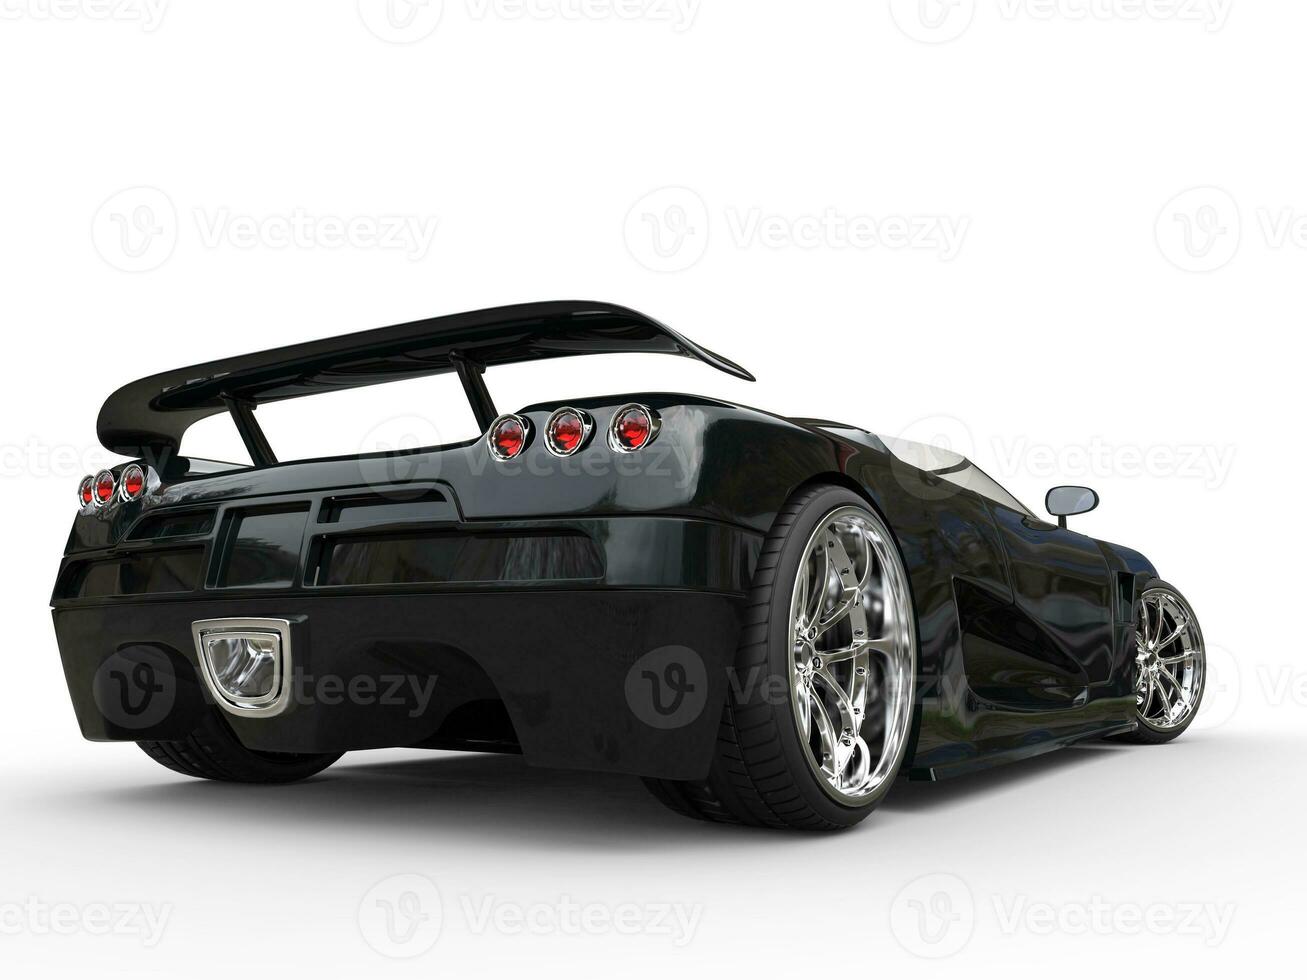 increíble negro coche deportivo - lado espalda ver foto